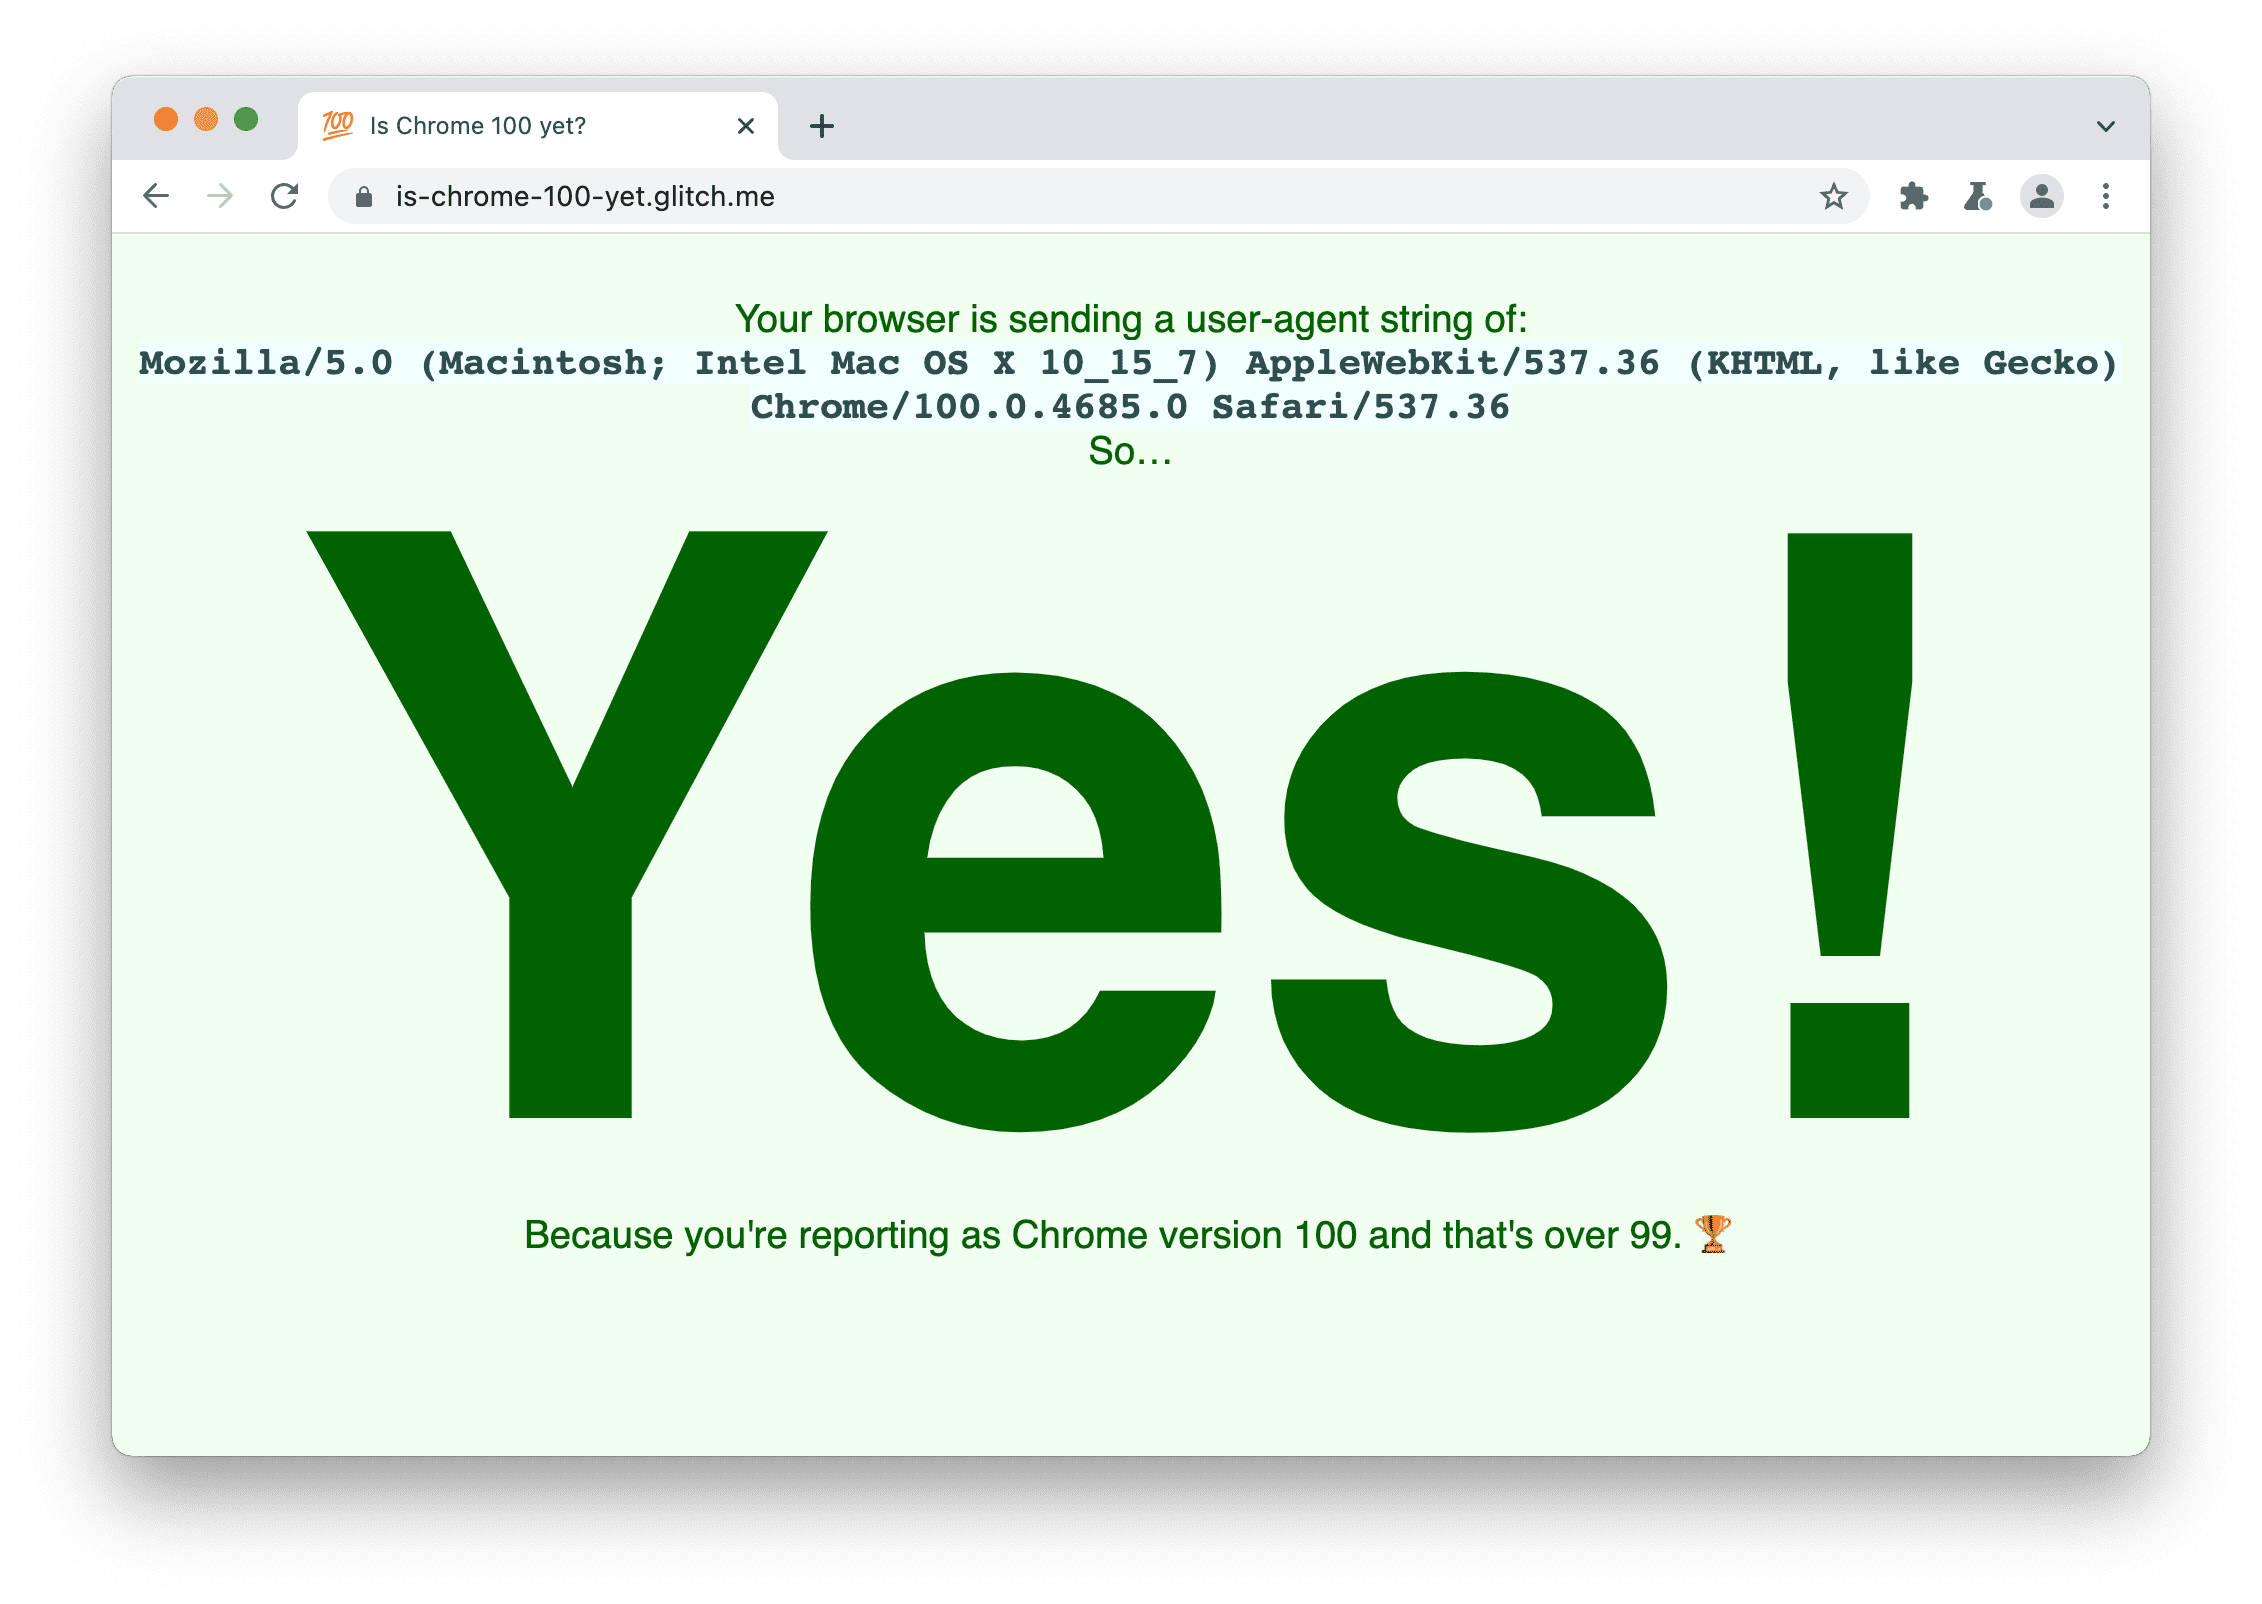 Situs yang memeriksa apakah browser mengirimkan
string 100 Agen Pengguna. Halaman ini menampilkan: Ya, karena Anda melaporkan sebagai Chrome versi 100 dan menggunakan versi di atas 99.